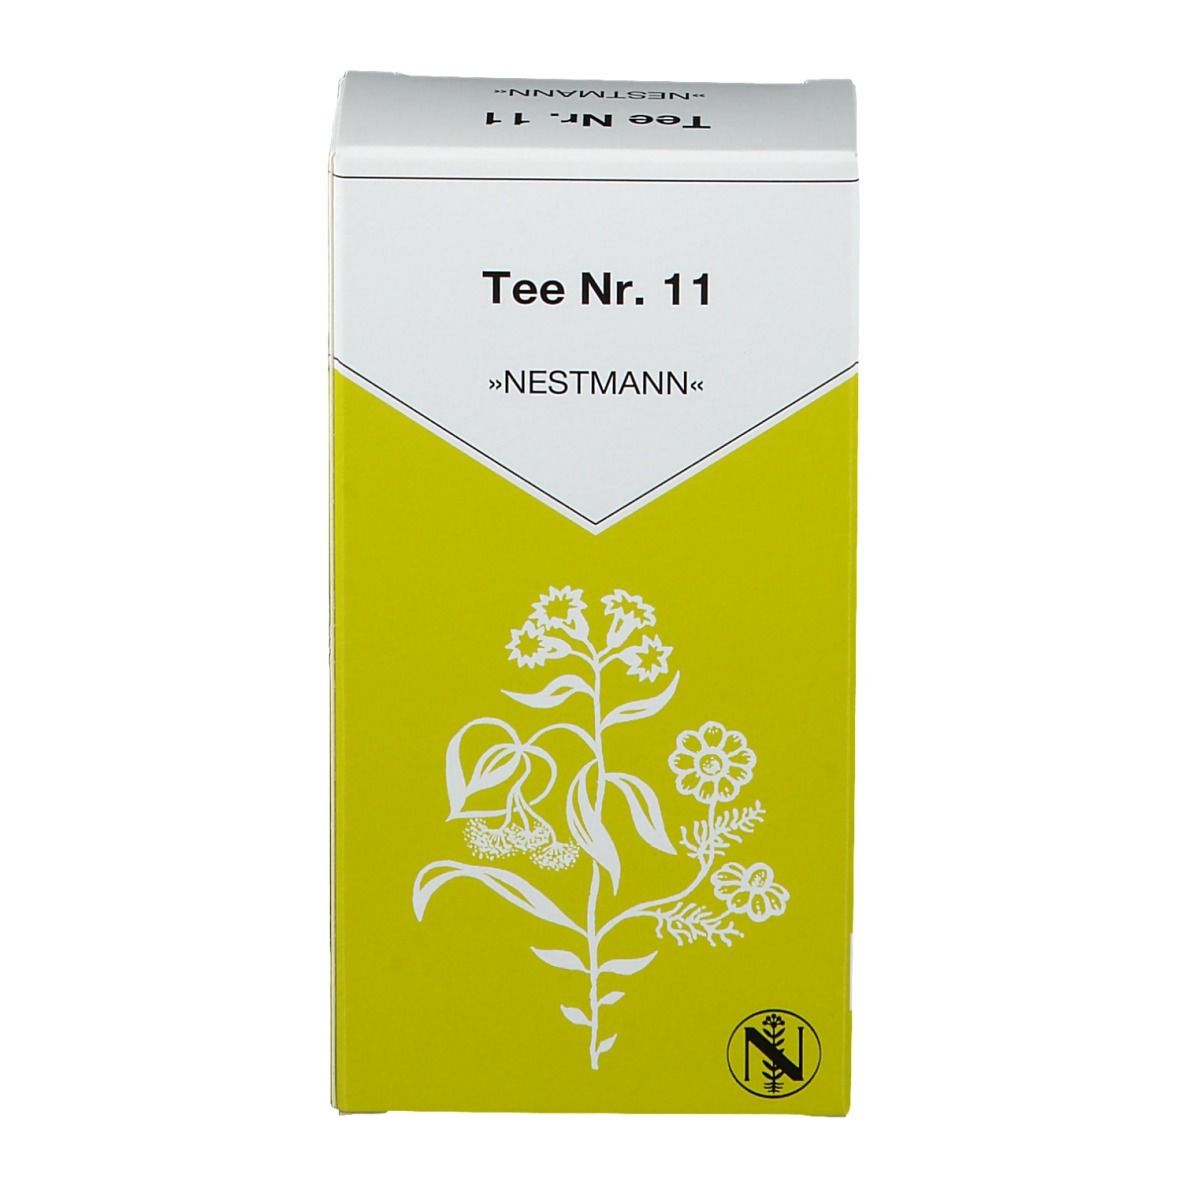 Nestmann Tee Nr.11